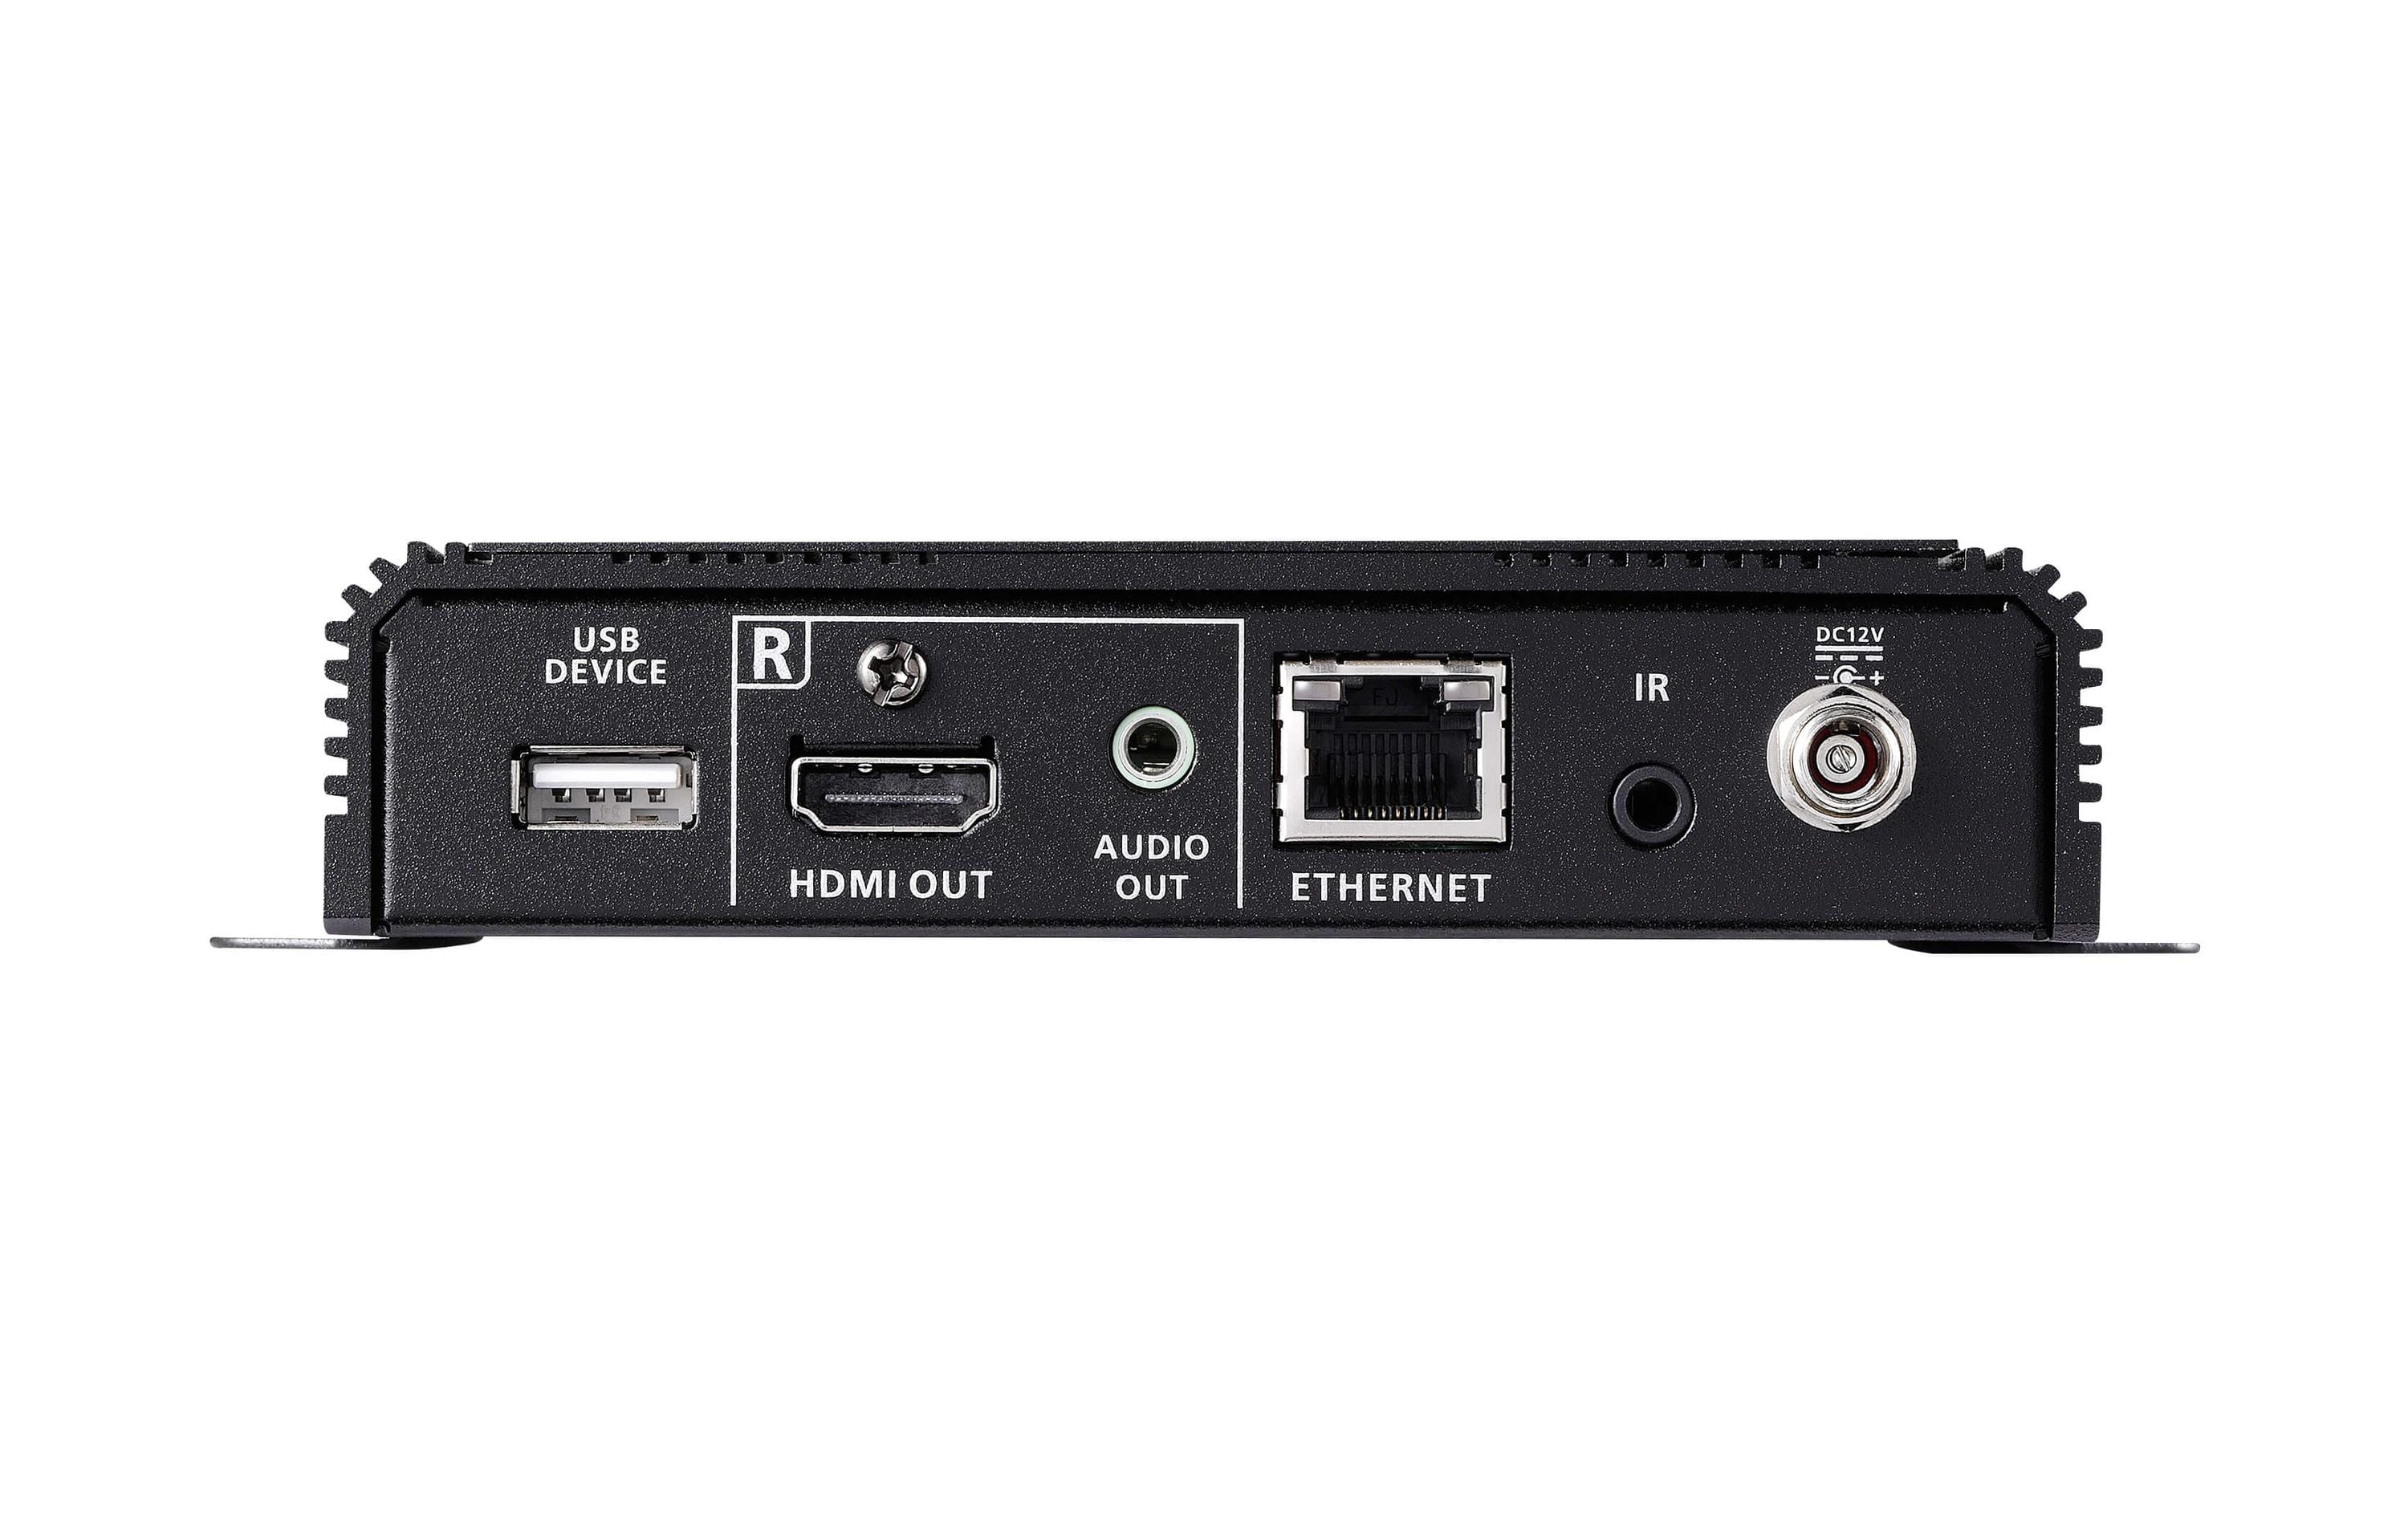 Aten HDMI Extender 4K VE1843 Transceiver oder Receiver